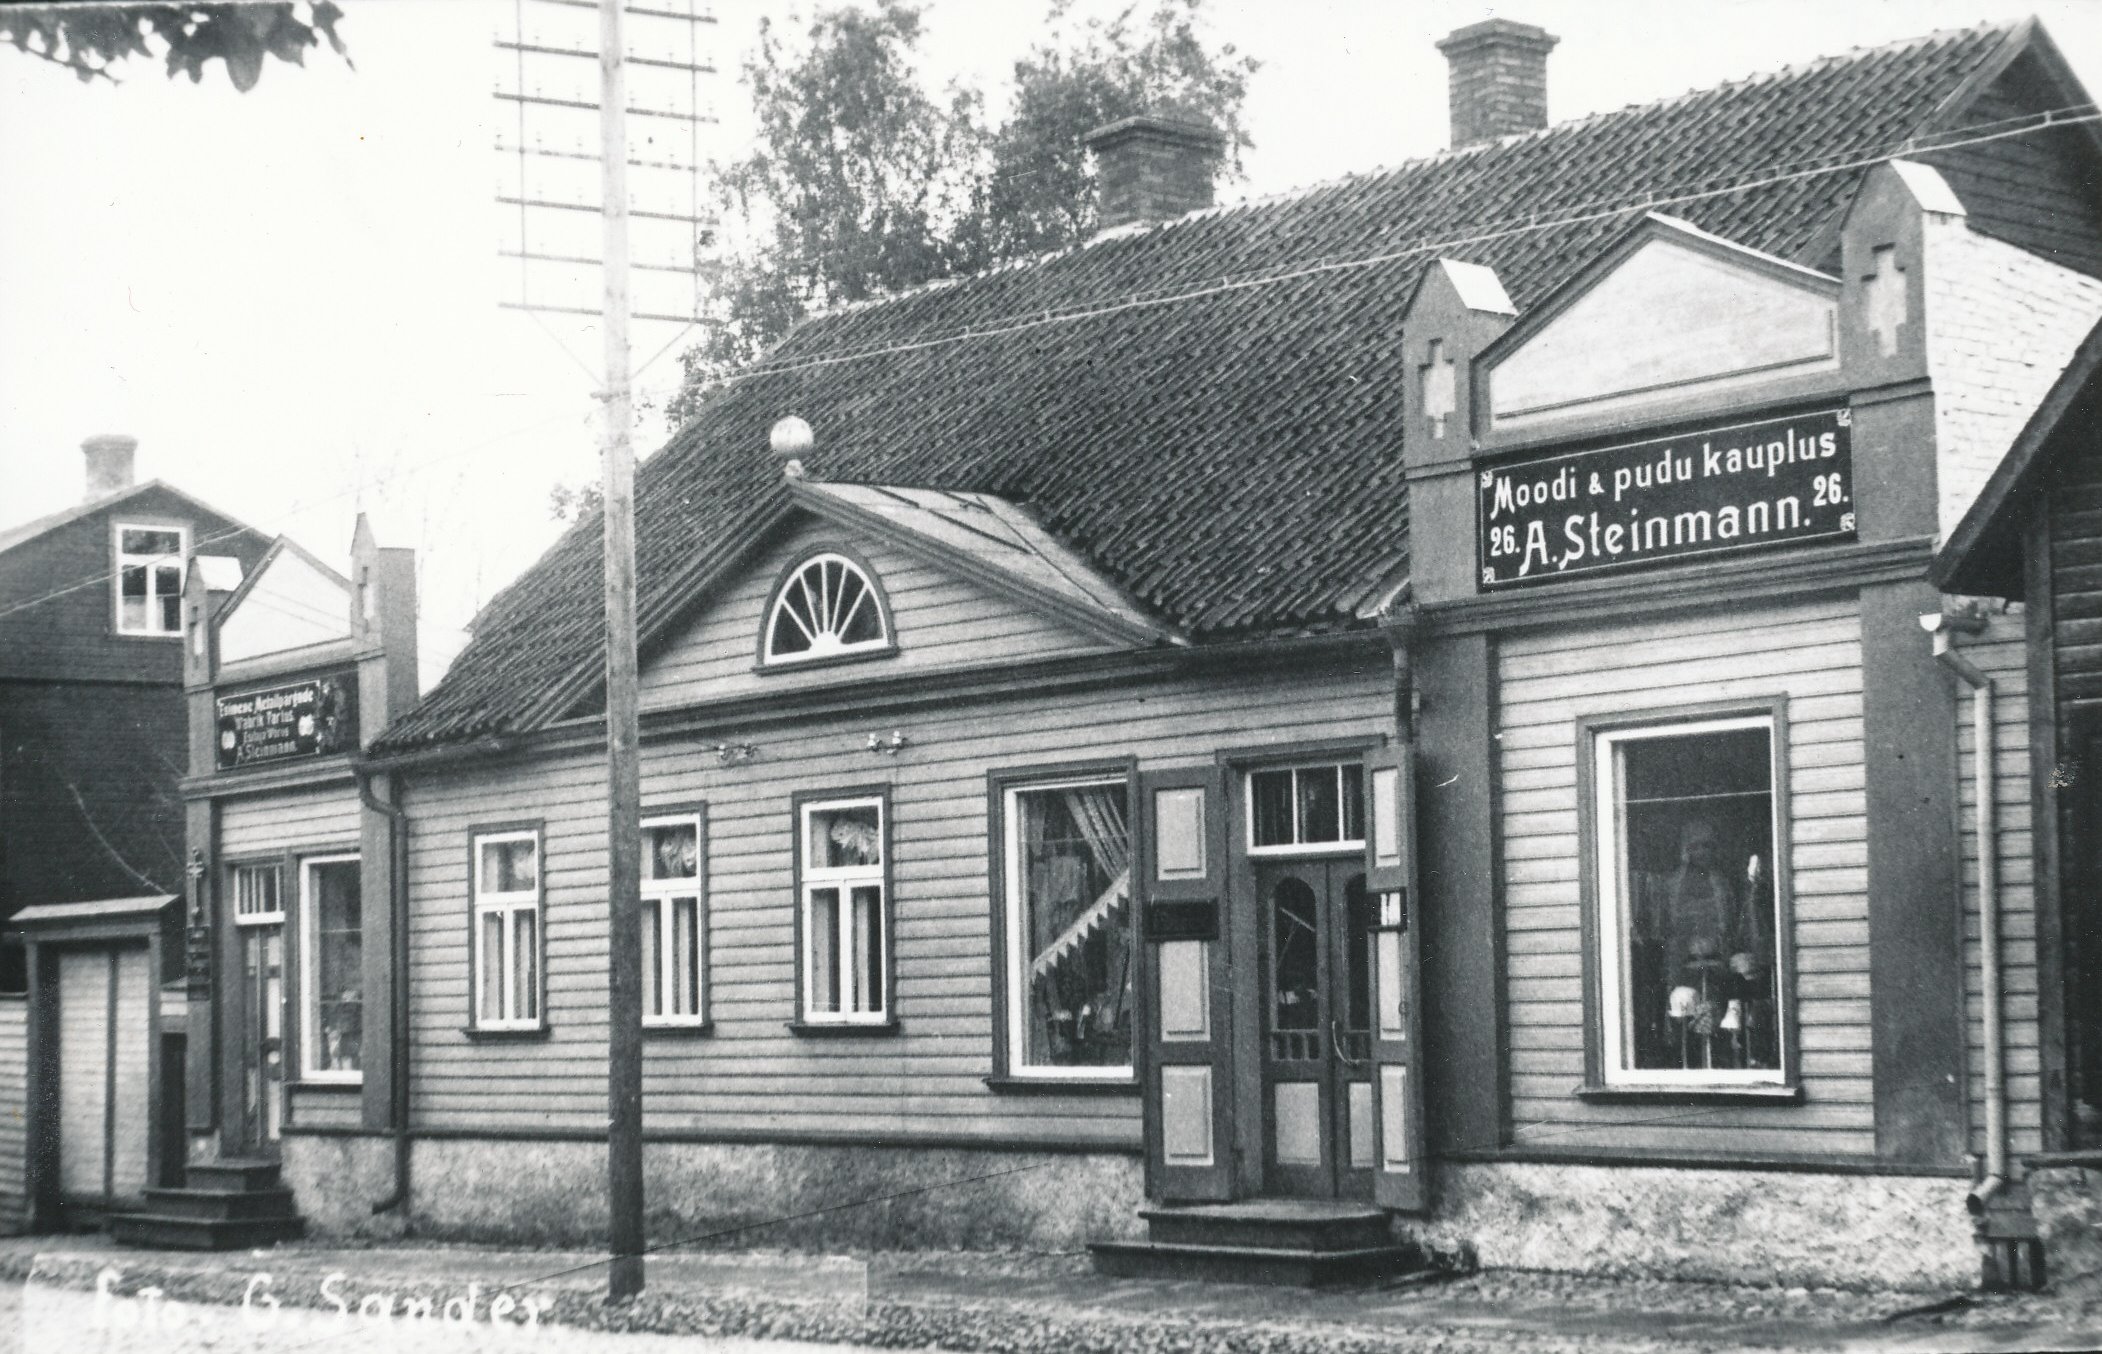 Foto. Võru linna A. Steinmanni moe- ja pudukauplus Kreutzwaldi tn. 26 1930. aastatel.